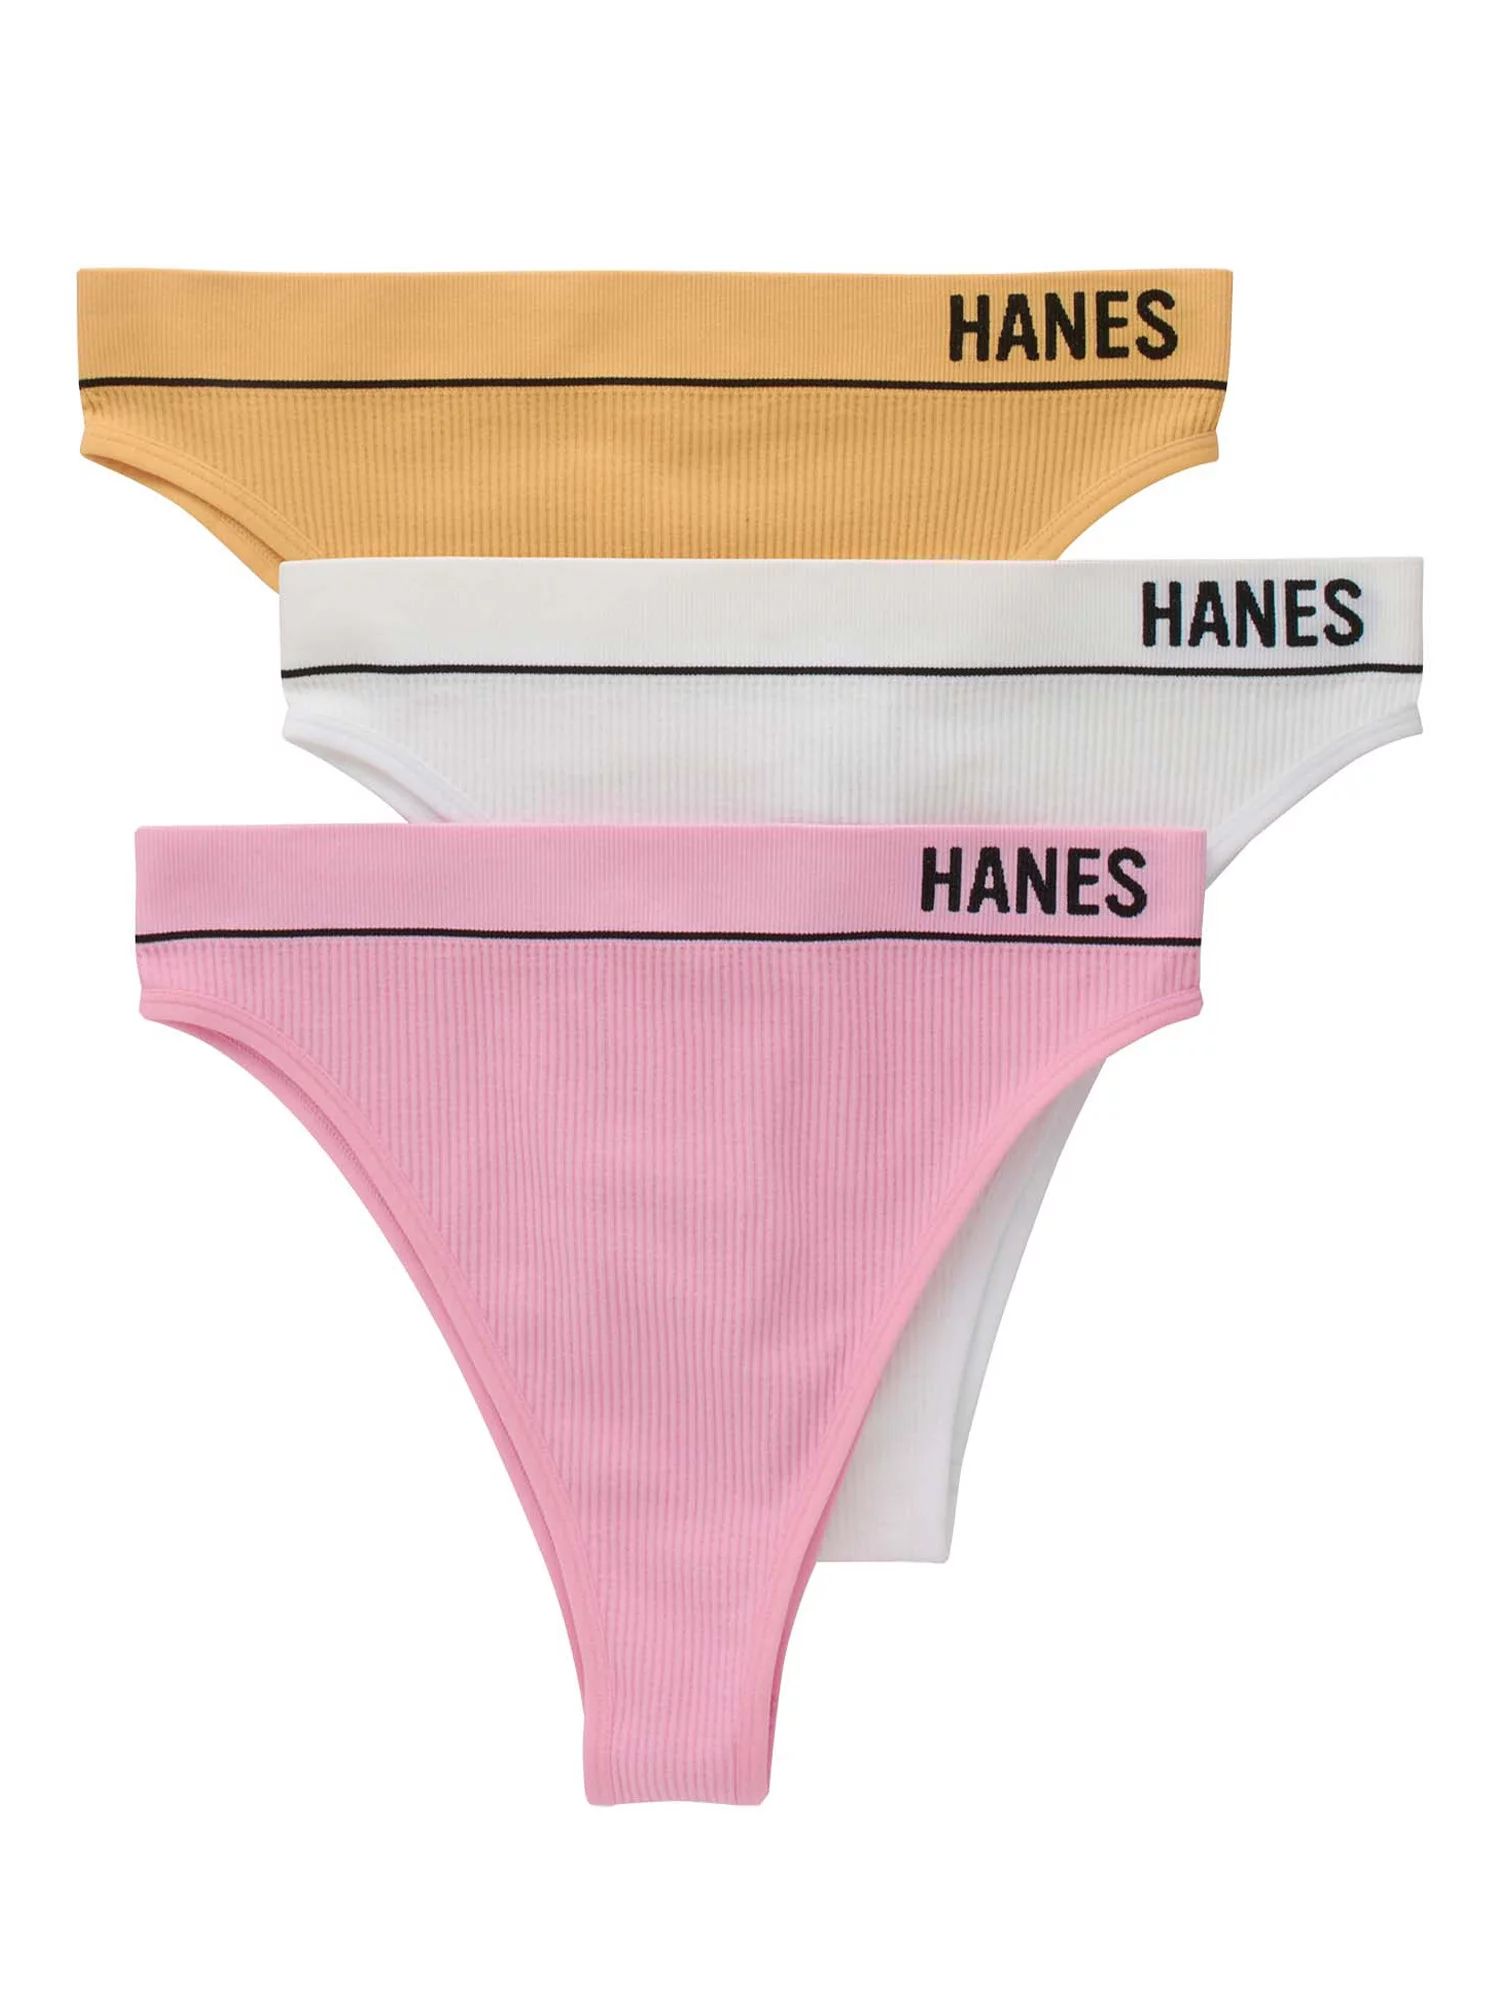 Hanes Classics Womens Seamless Retro Rib Cheeky , 3 Pack | Walmart (US)